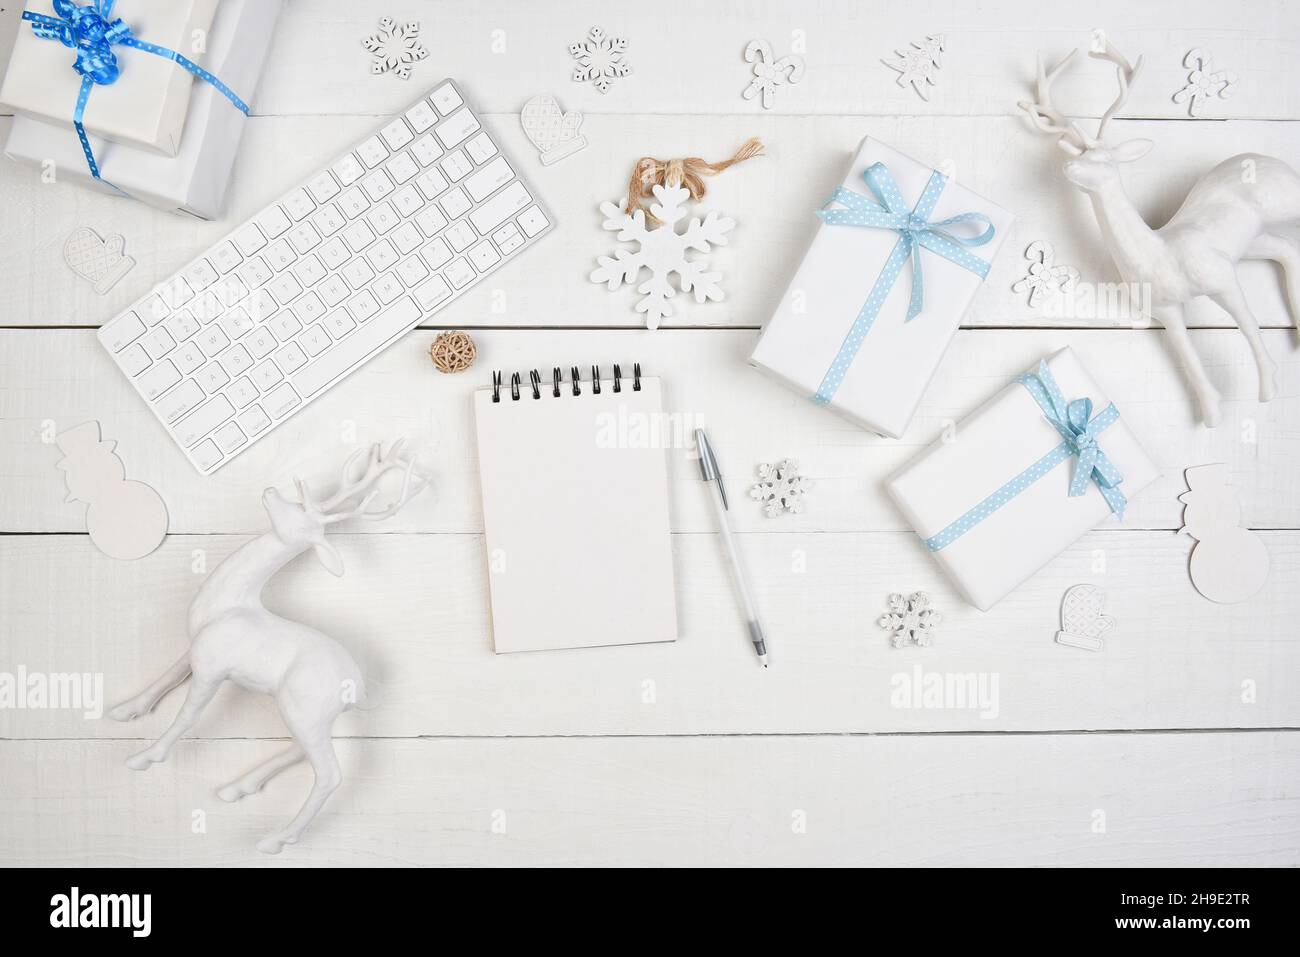 Concept de Noël à plat.Papier blanc emballé présente avec ruban bleu un bloc-notes vierge et un clavier d'ordinateur pour cyber-shopping. Banque D'Images